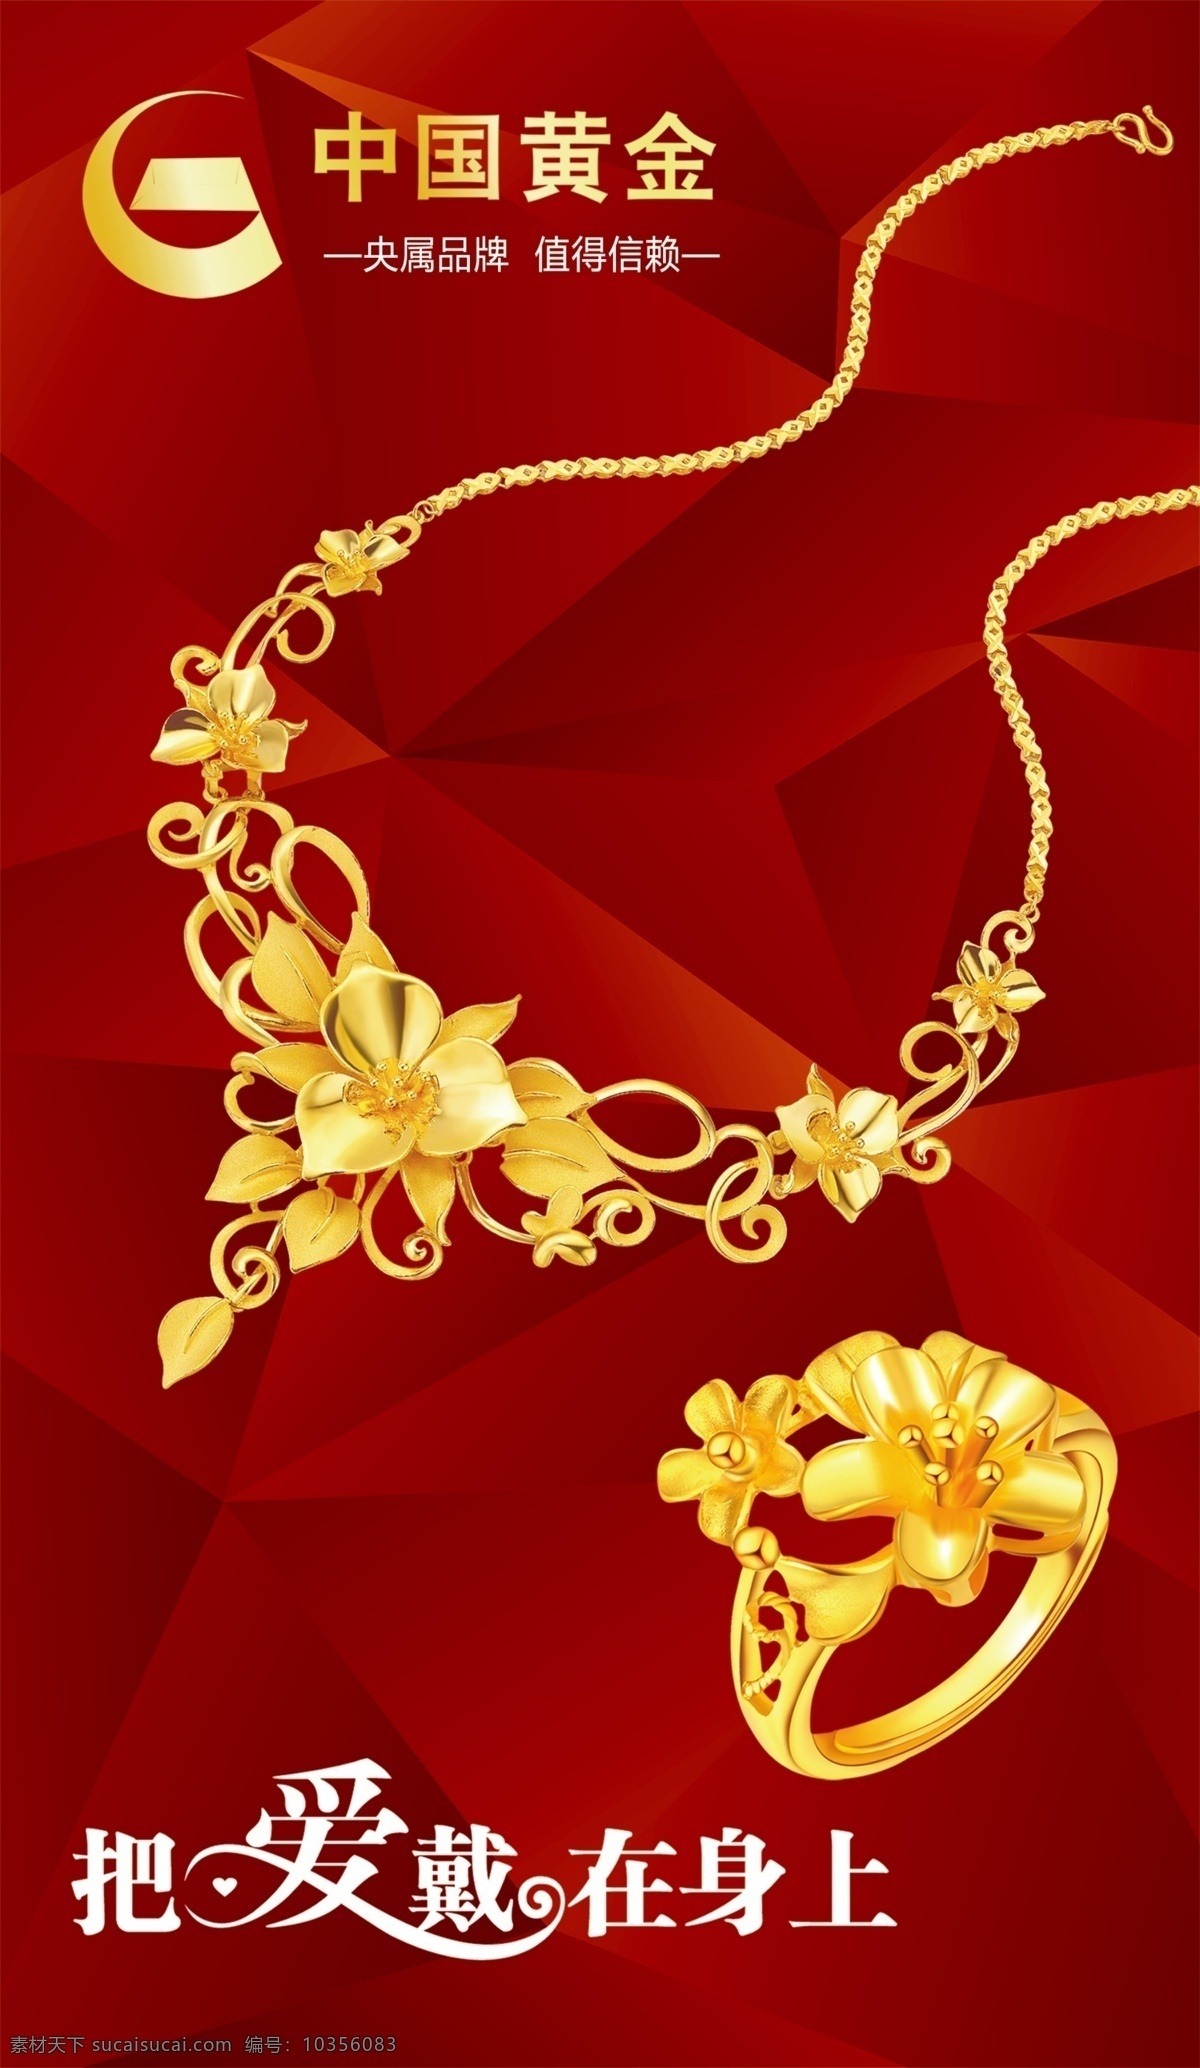 珠宝户外广告 珠宝 中国黄金 珠宝设计 中国黄金海报